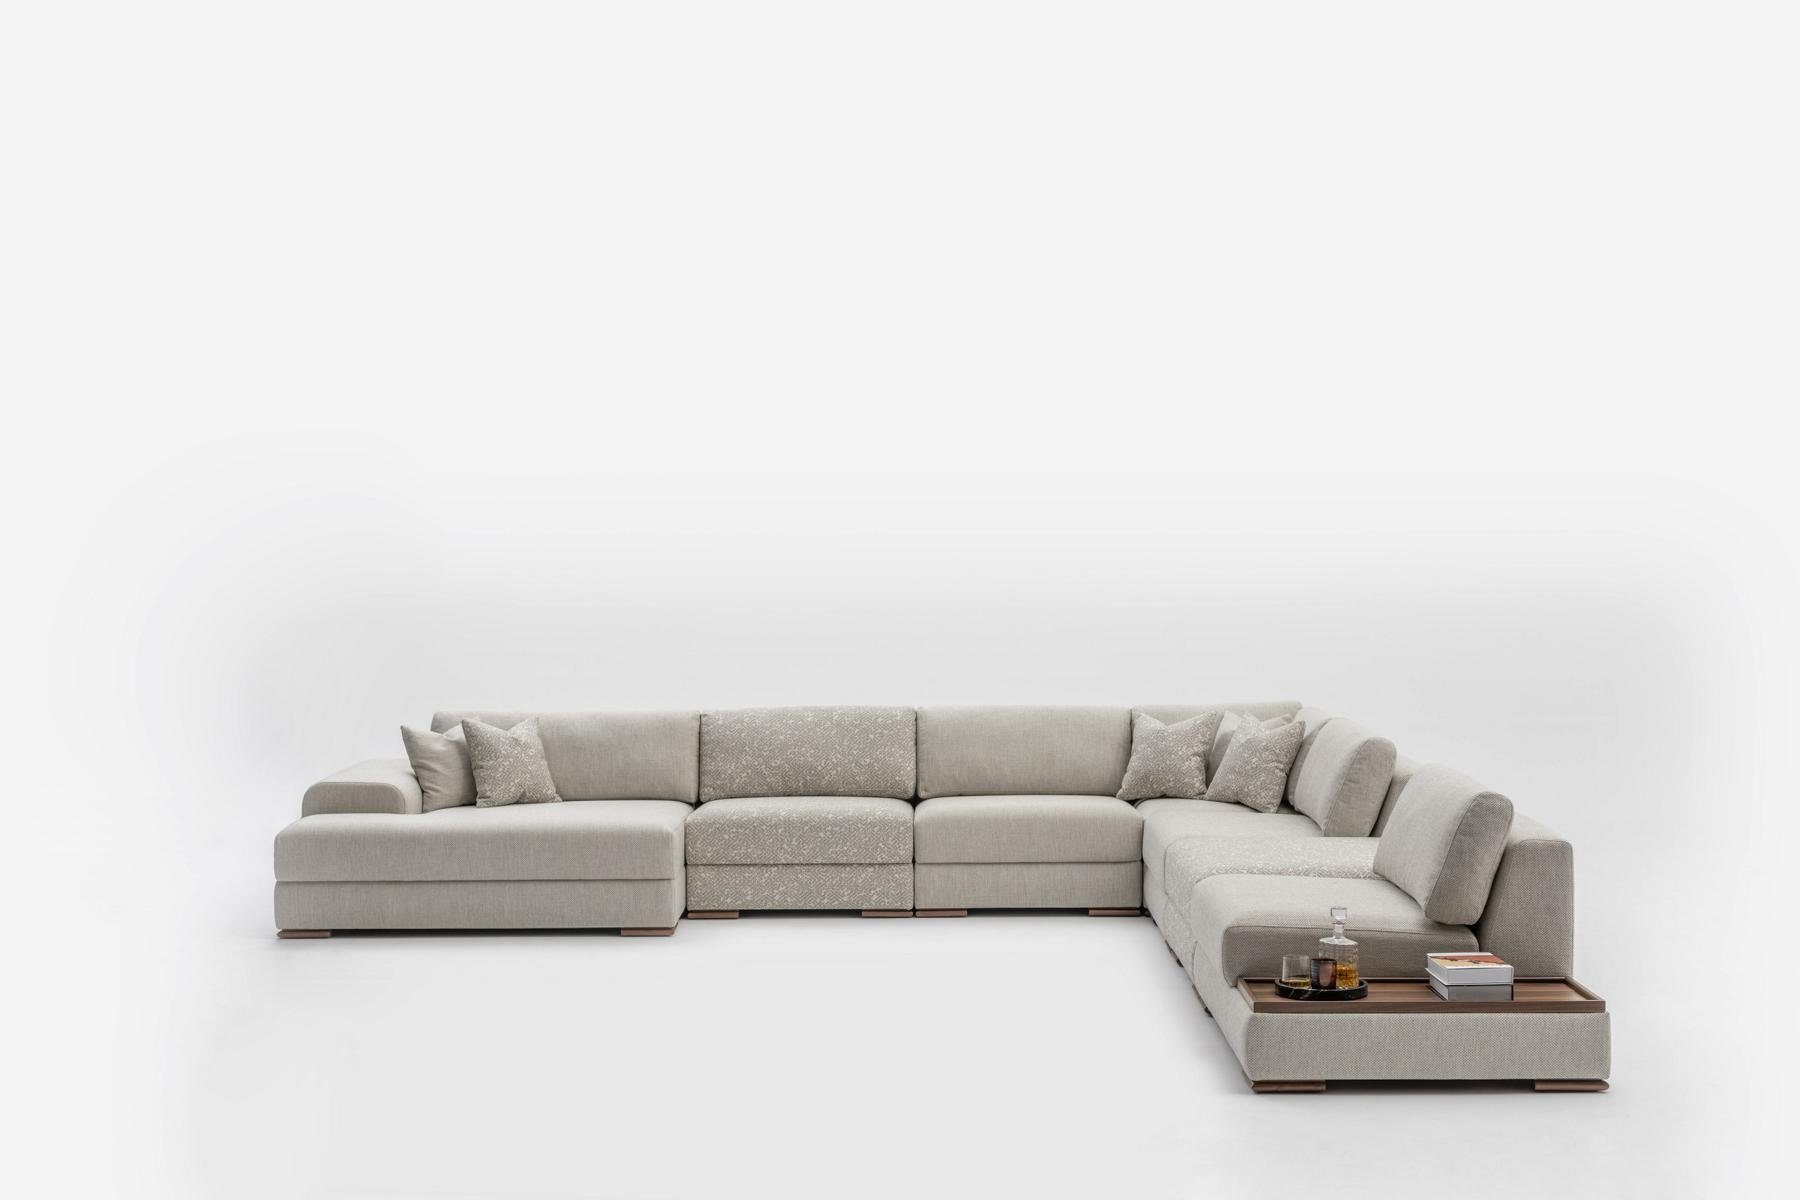 JVmoebel Ecksofa Modern Sofa U Form Design Möbel Luxus Wohnzimmer Grau, Made in Europe | Ecksofas